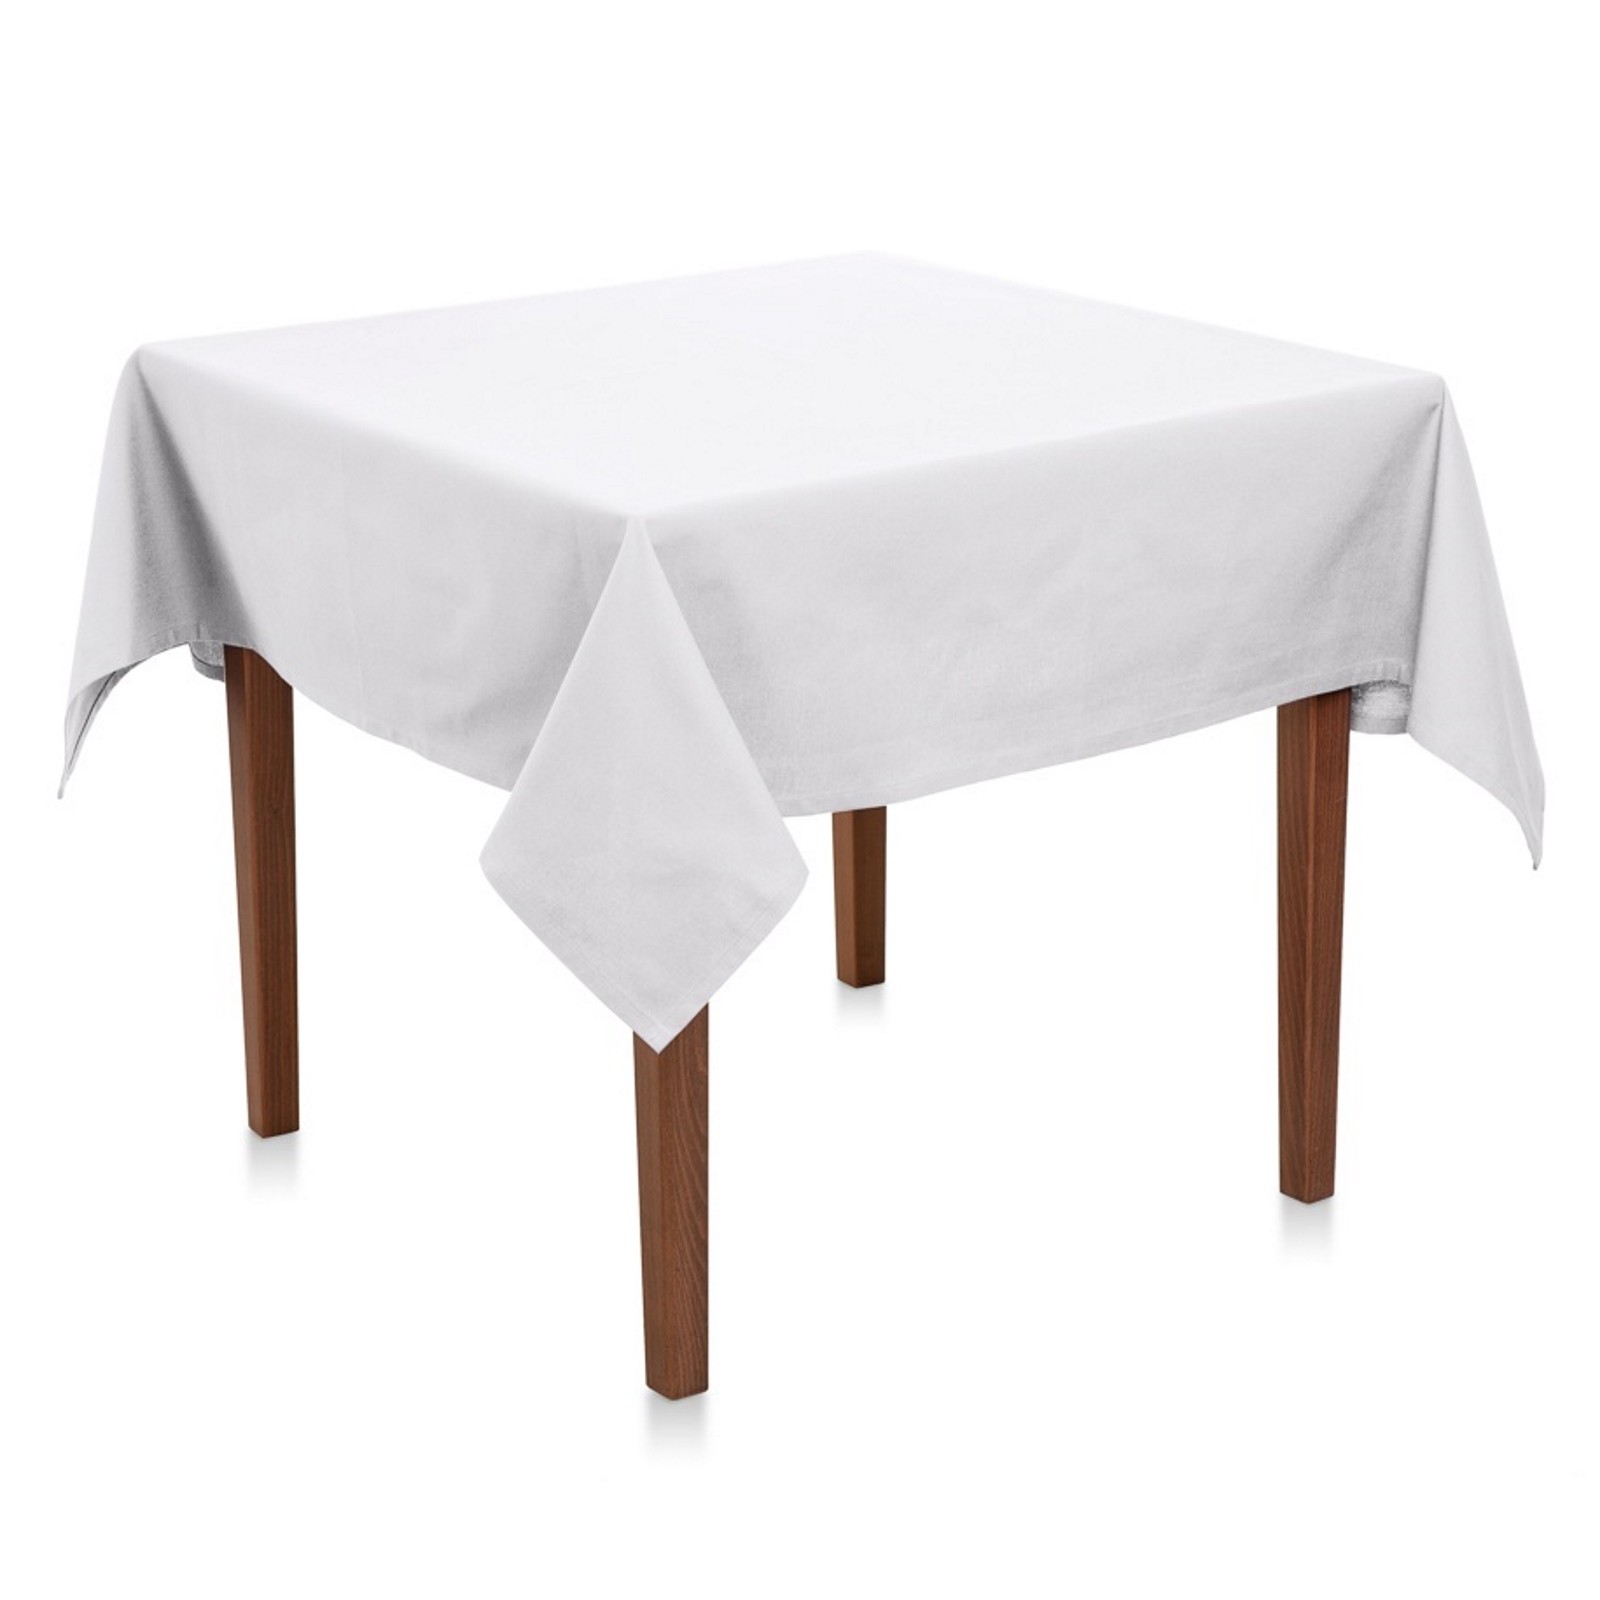 Tischdecke Uni Baumwolle Weiß-80x80 cm